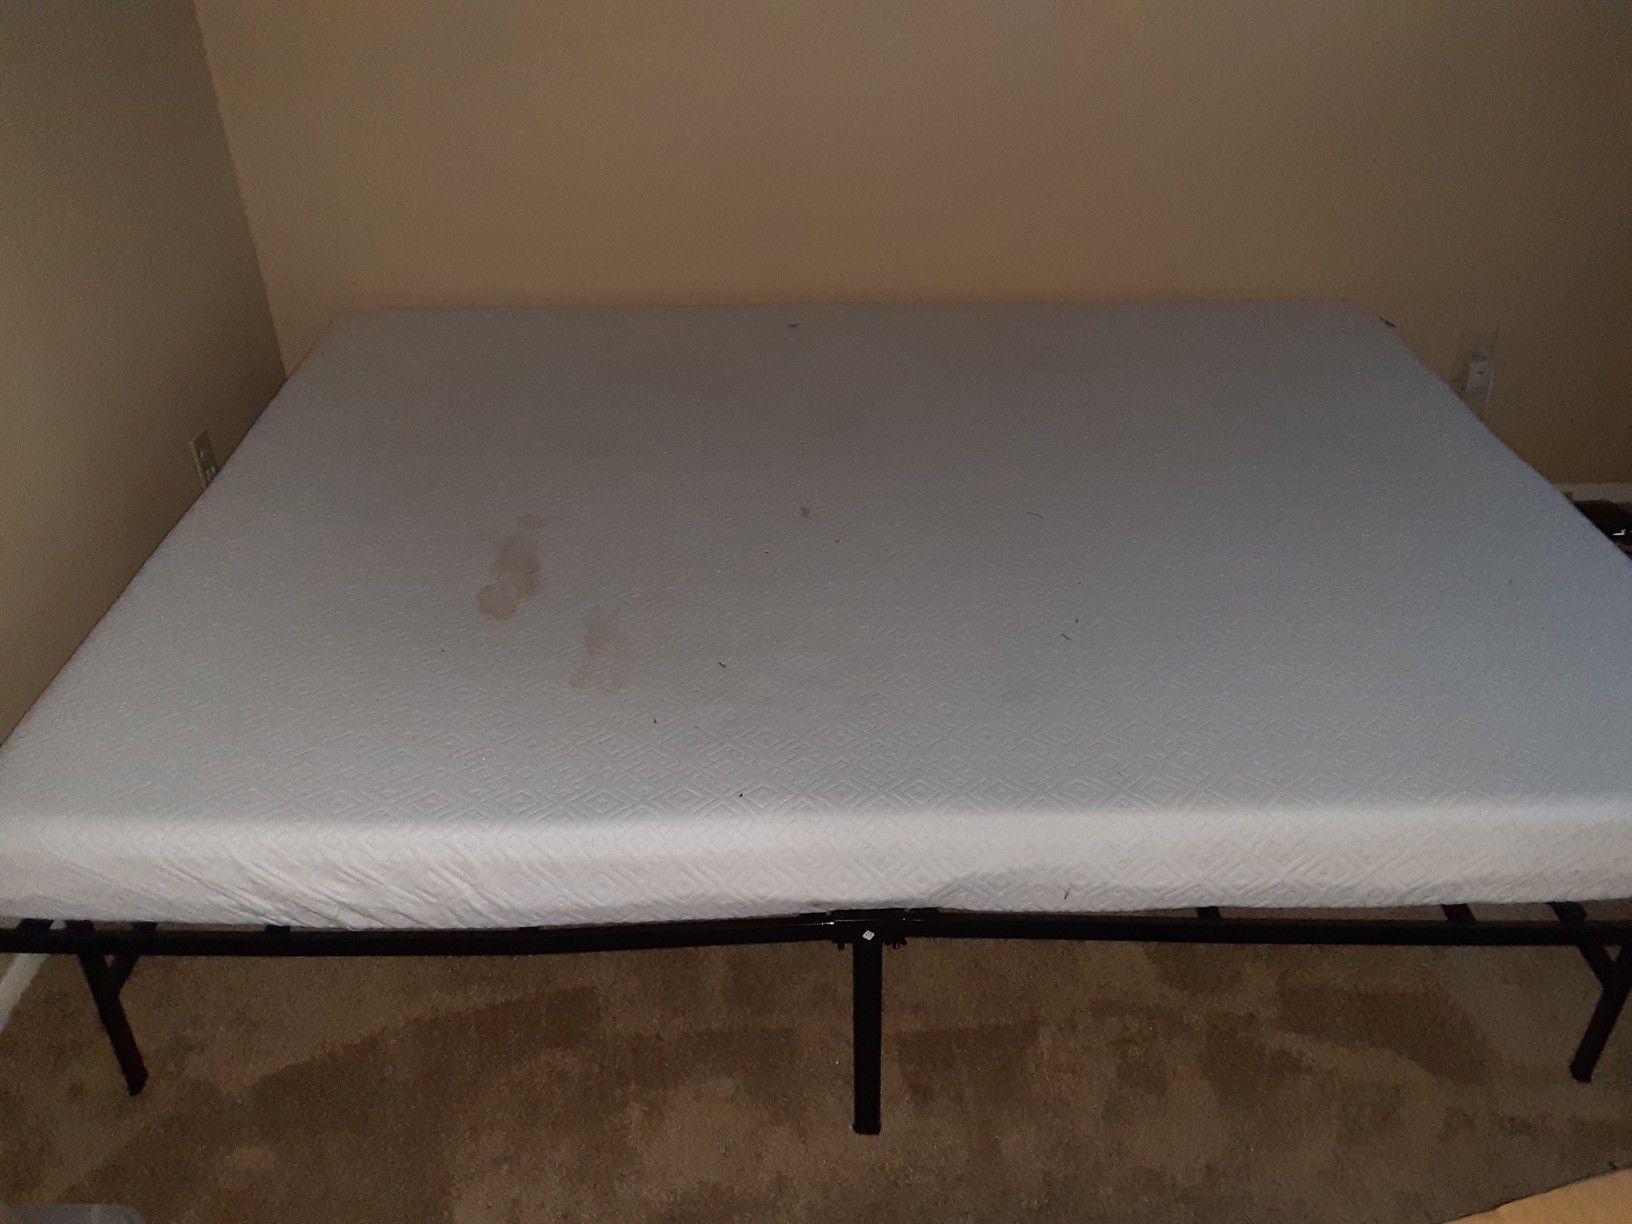 Foam mattress and platform bed